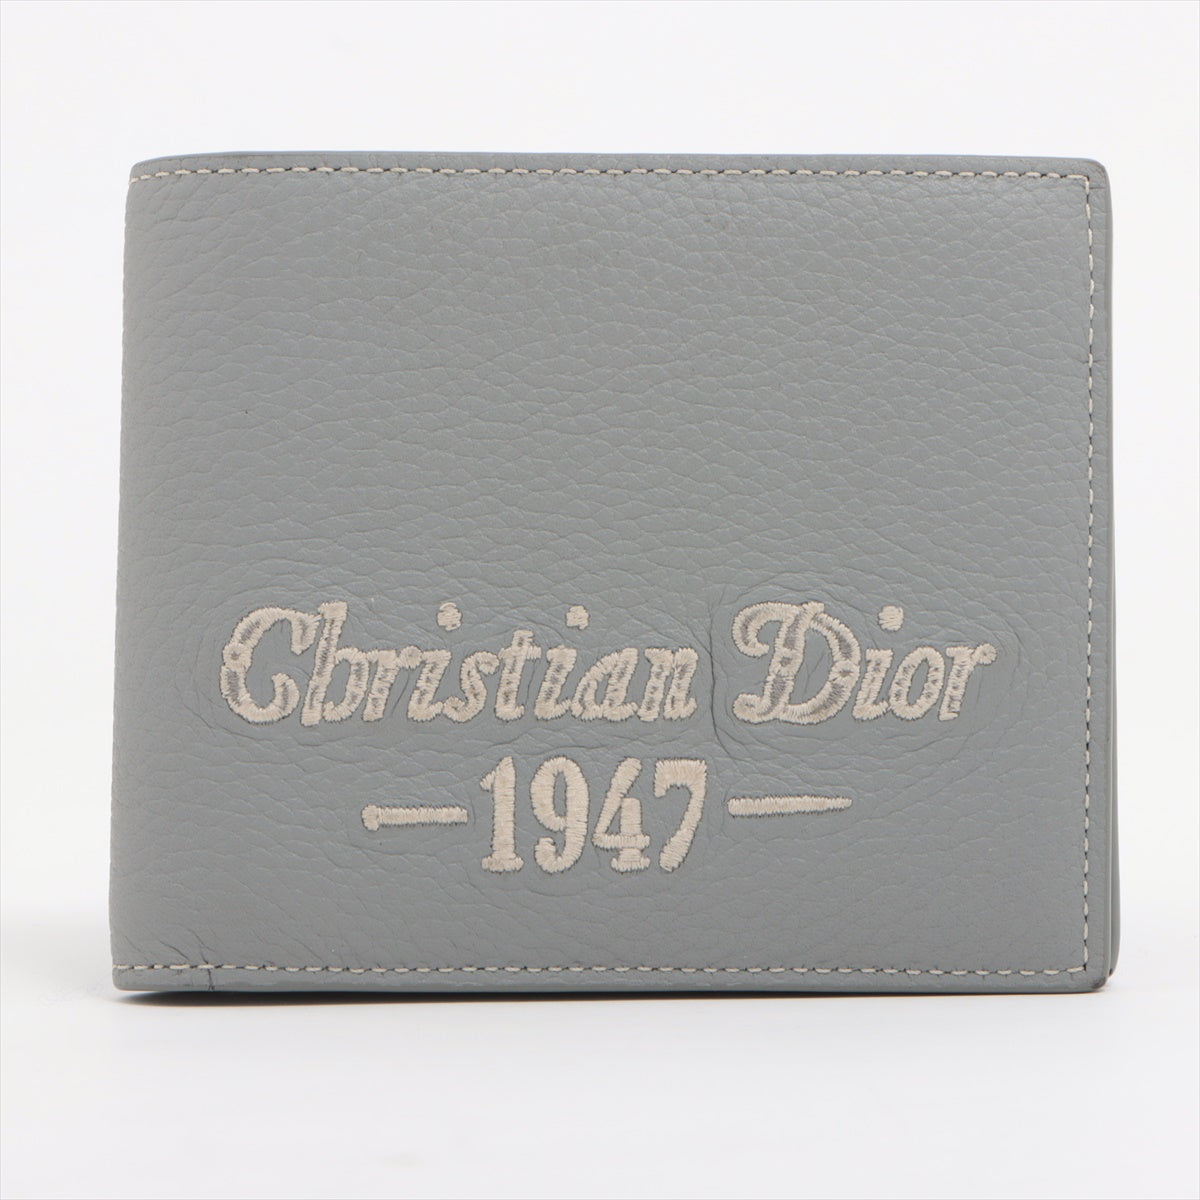 Dior CD1947 Leather Wallet Gr